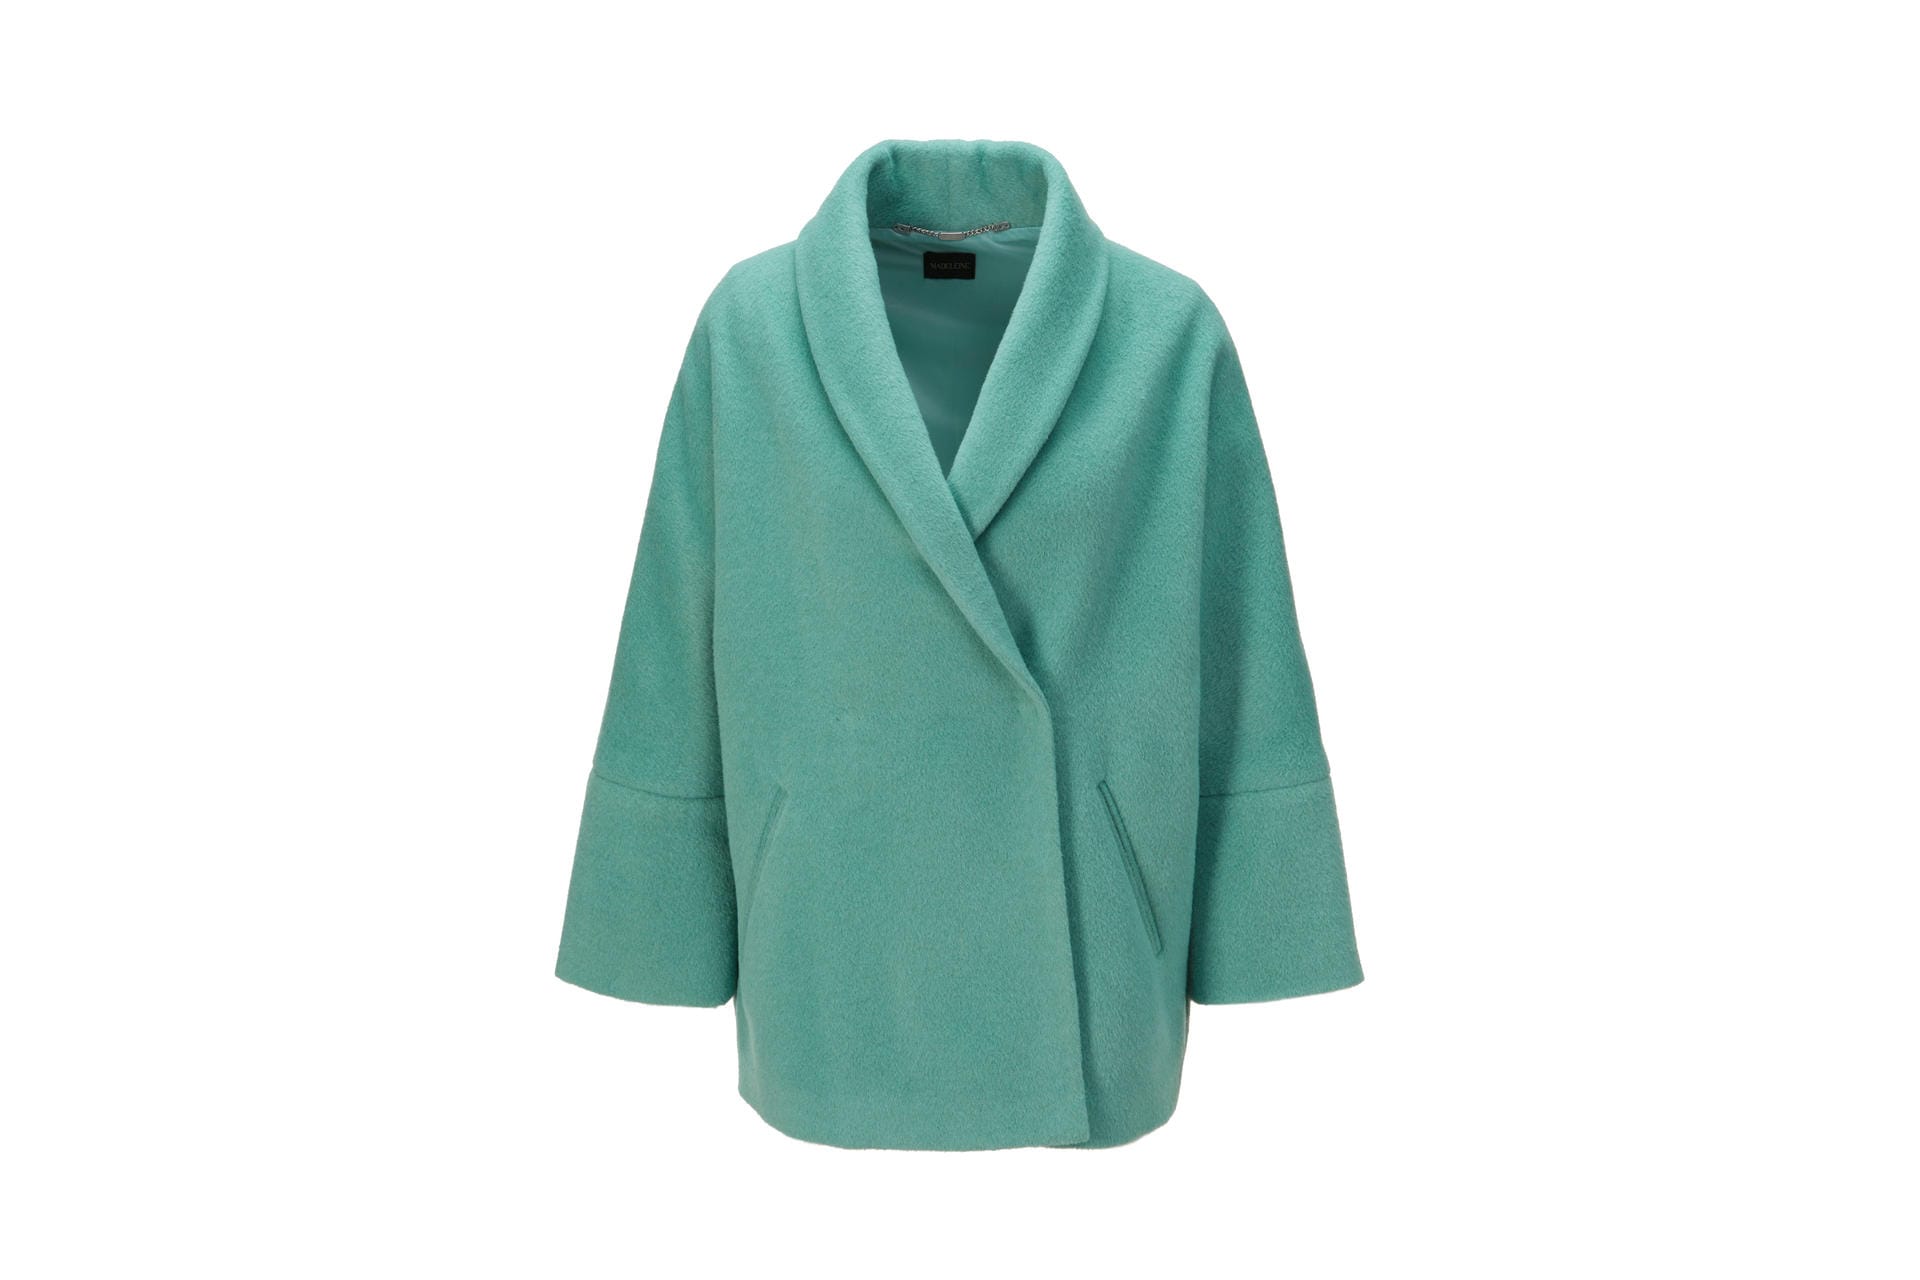 Und drüber ein weiter Mantel: Jacken im Oversized-Stil finden sich aktuell vielfach im Handel, auch zum Beispiel von Madeleine (ca. 300 Euro).